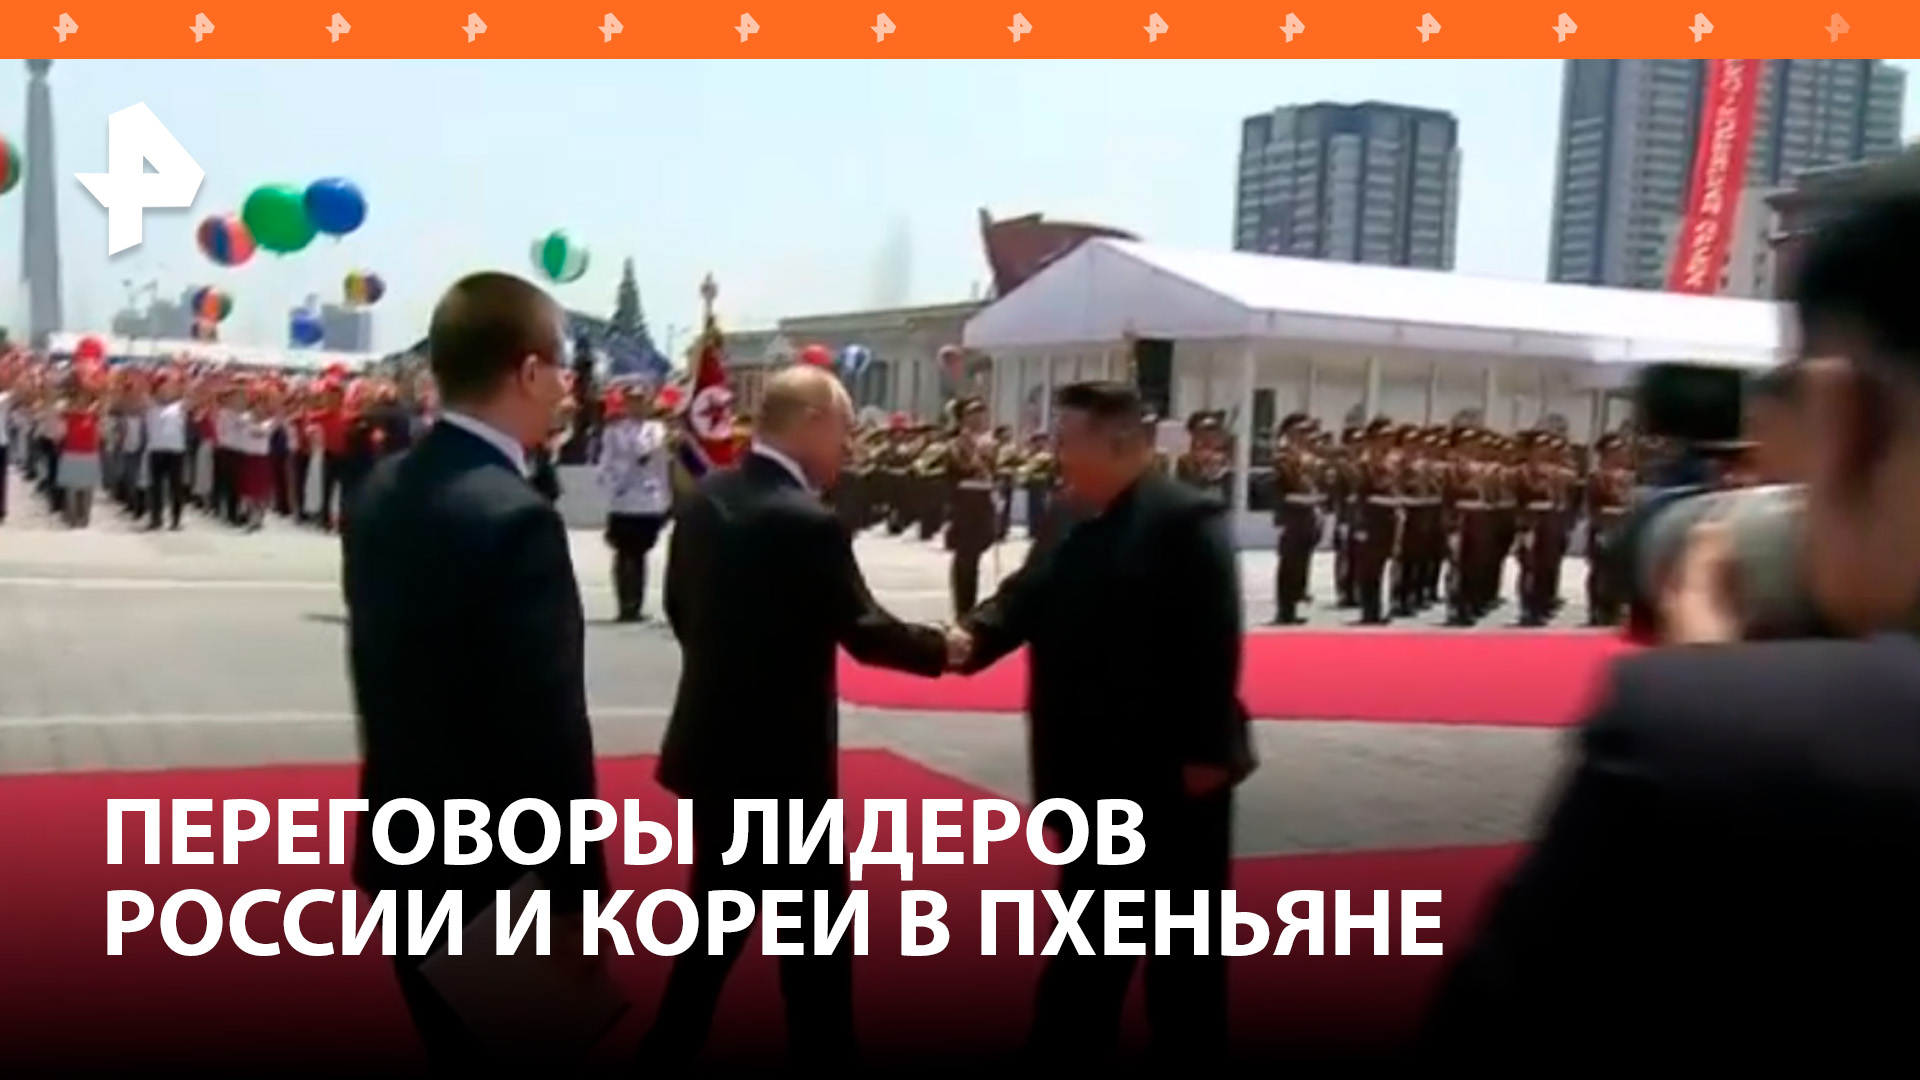 РФ ценит поддержку КНДР российской политики, в том числе на украинском направлении: Путин в КНДР